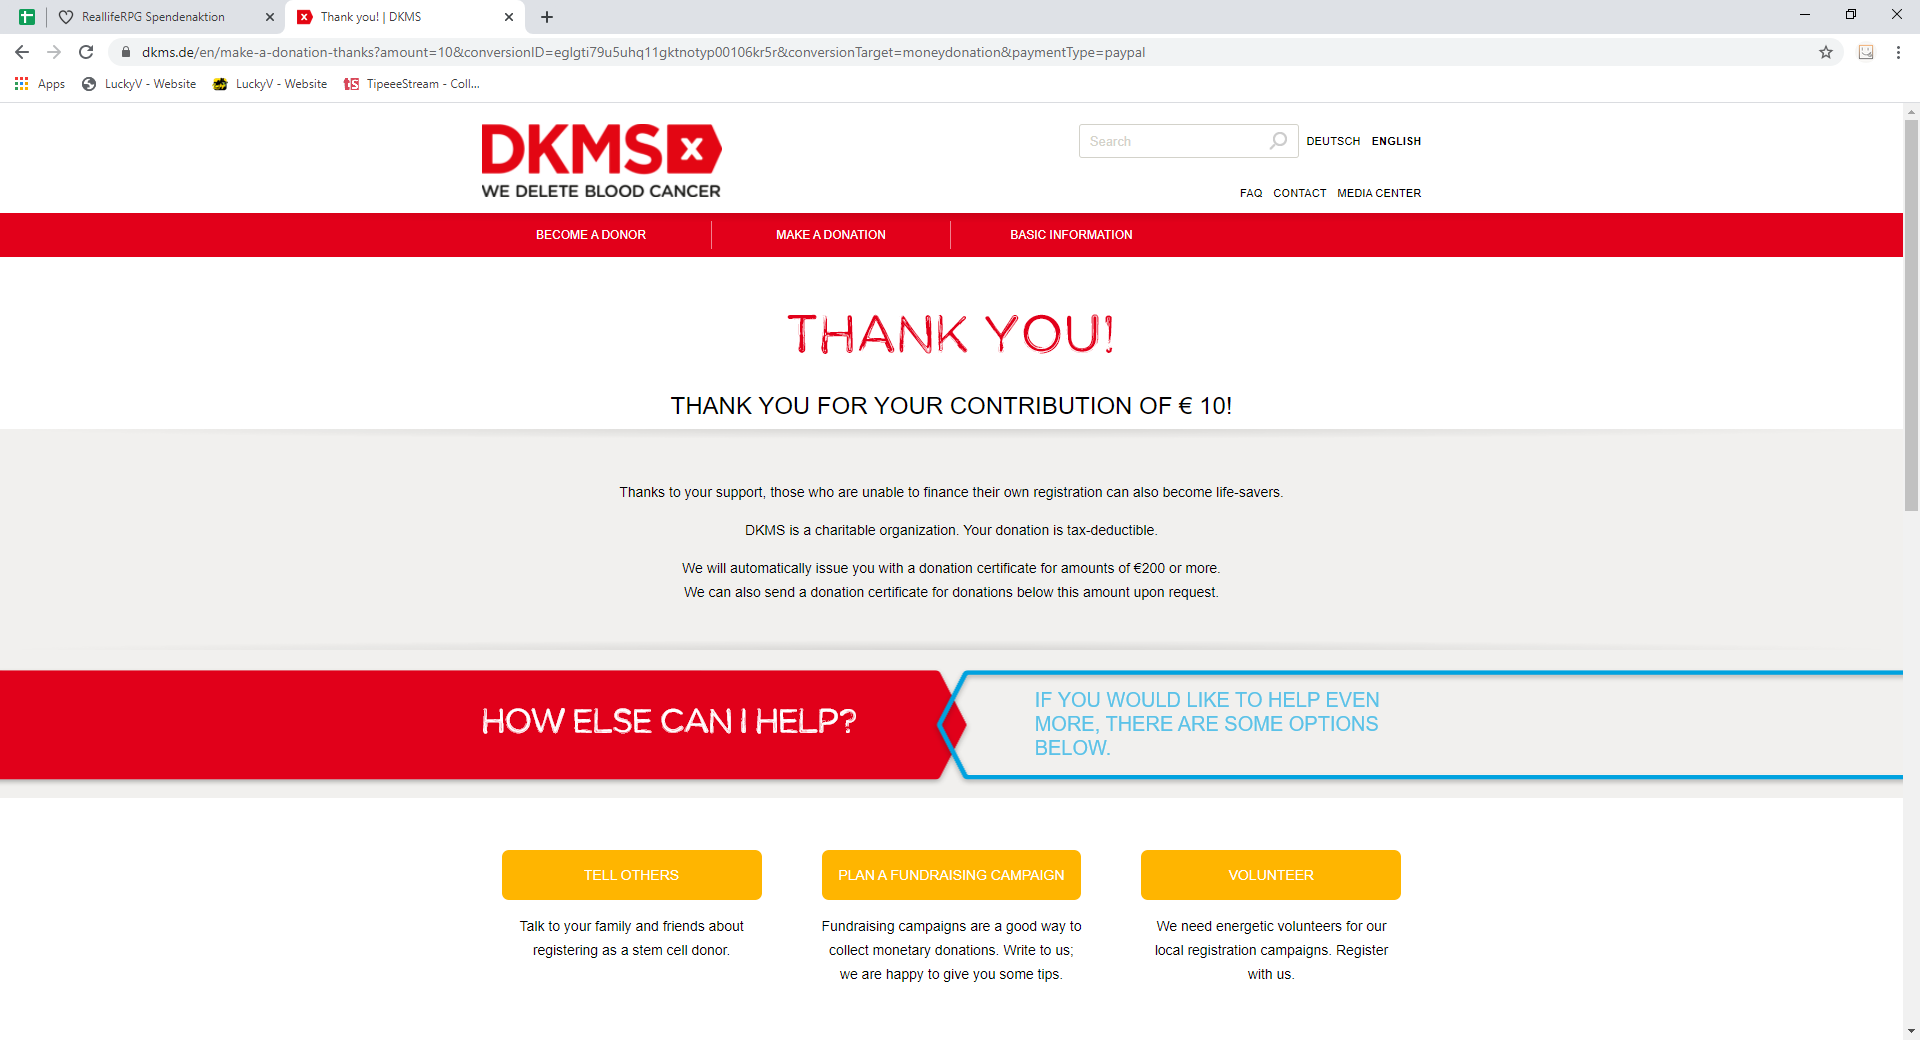 Wir haben in der Schule ein Projekt mit der DKMS gemacht. Dieses hat mich dazu gebracht der DKMS zumindest 10 Euro zu spenden.